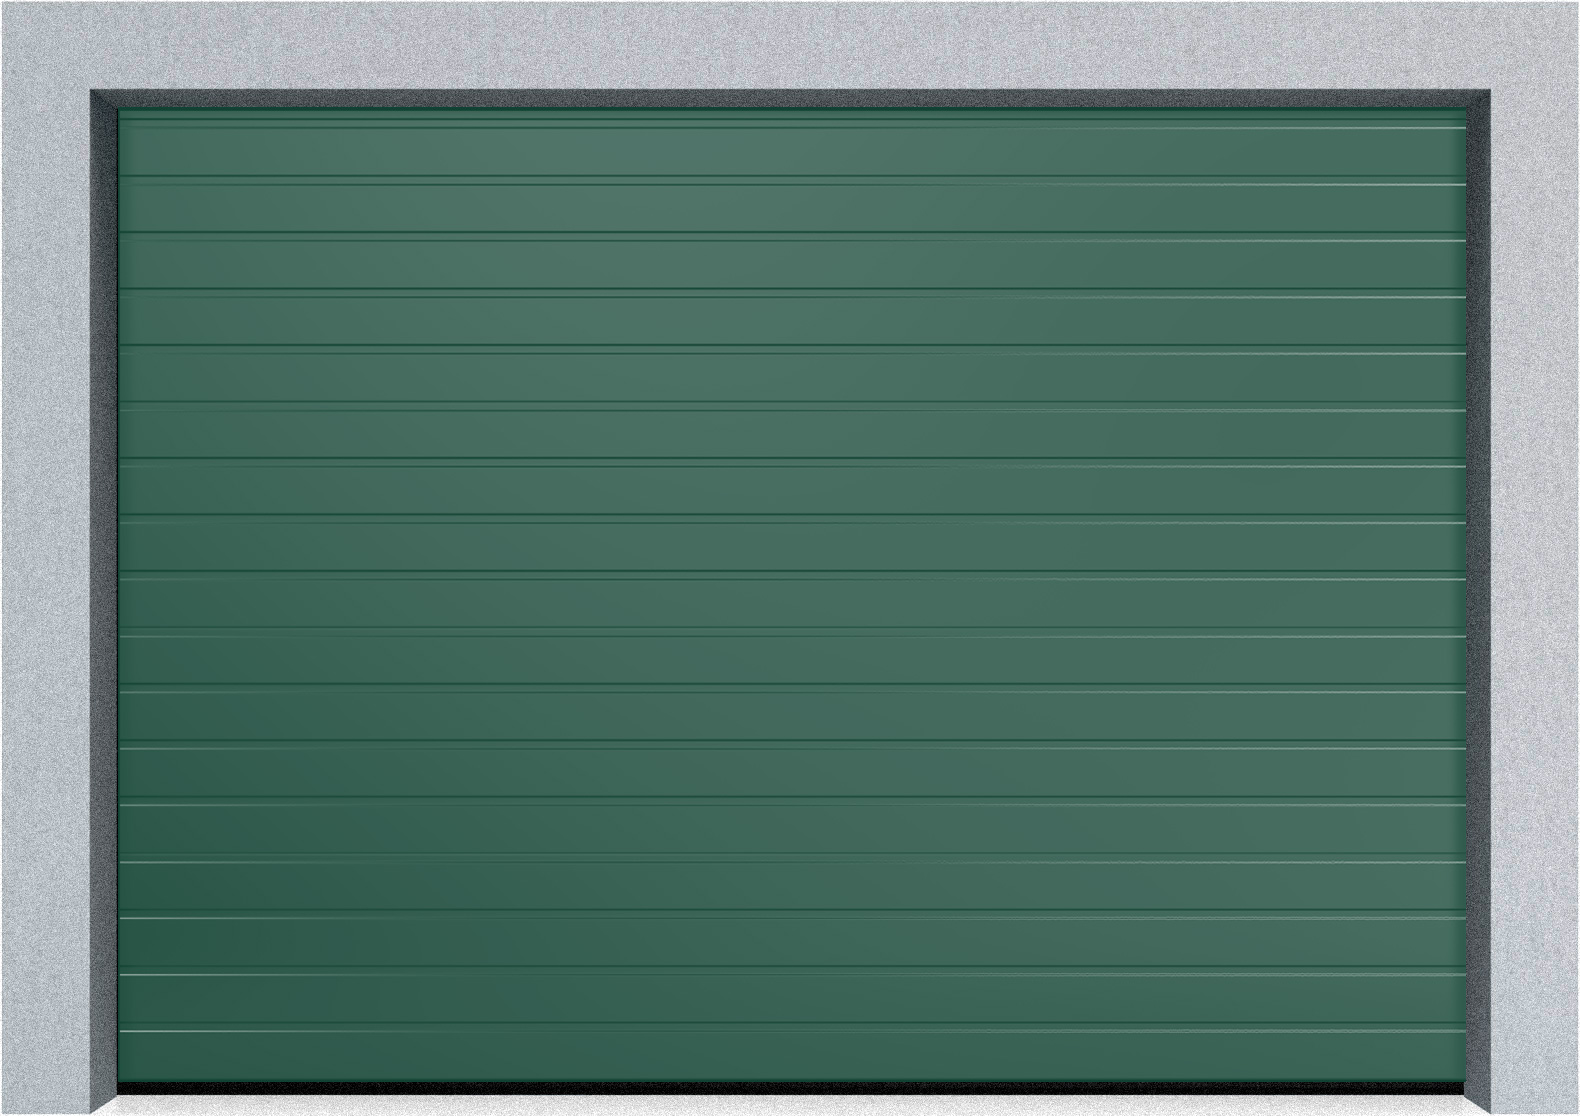  Автоматические Секционные гаражные ворота Hormann LTE 42 2750х2500 S-гофр, Микроволна стандартные цвета, фото 3 